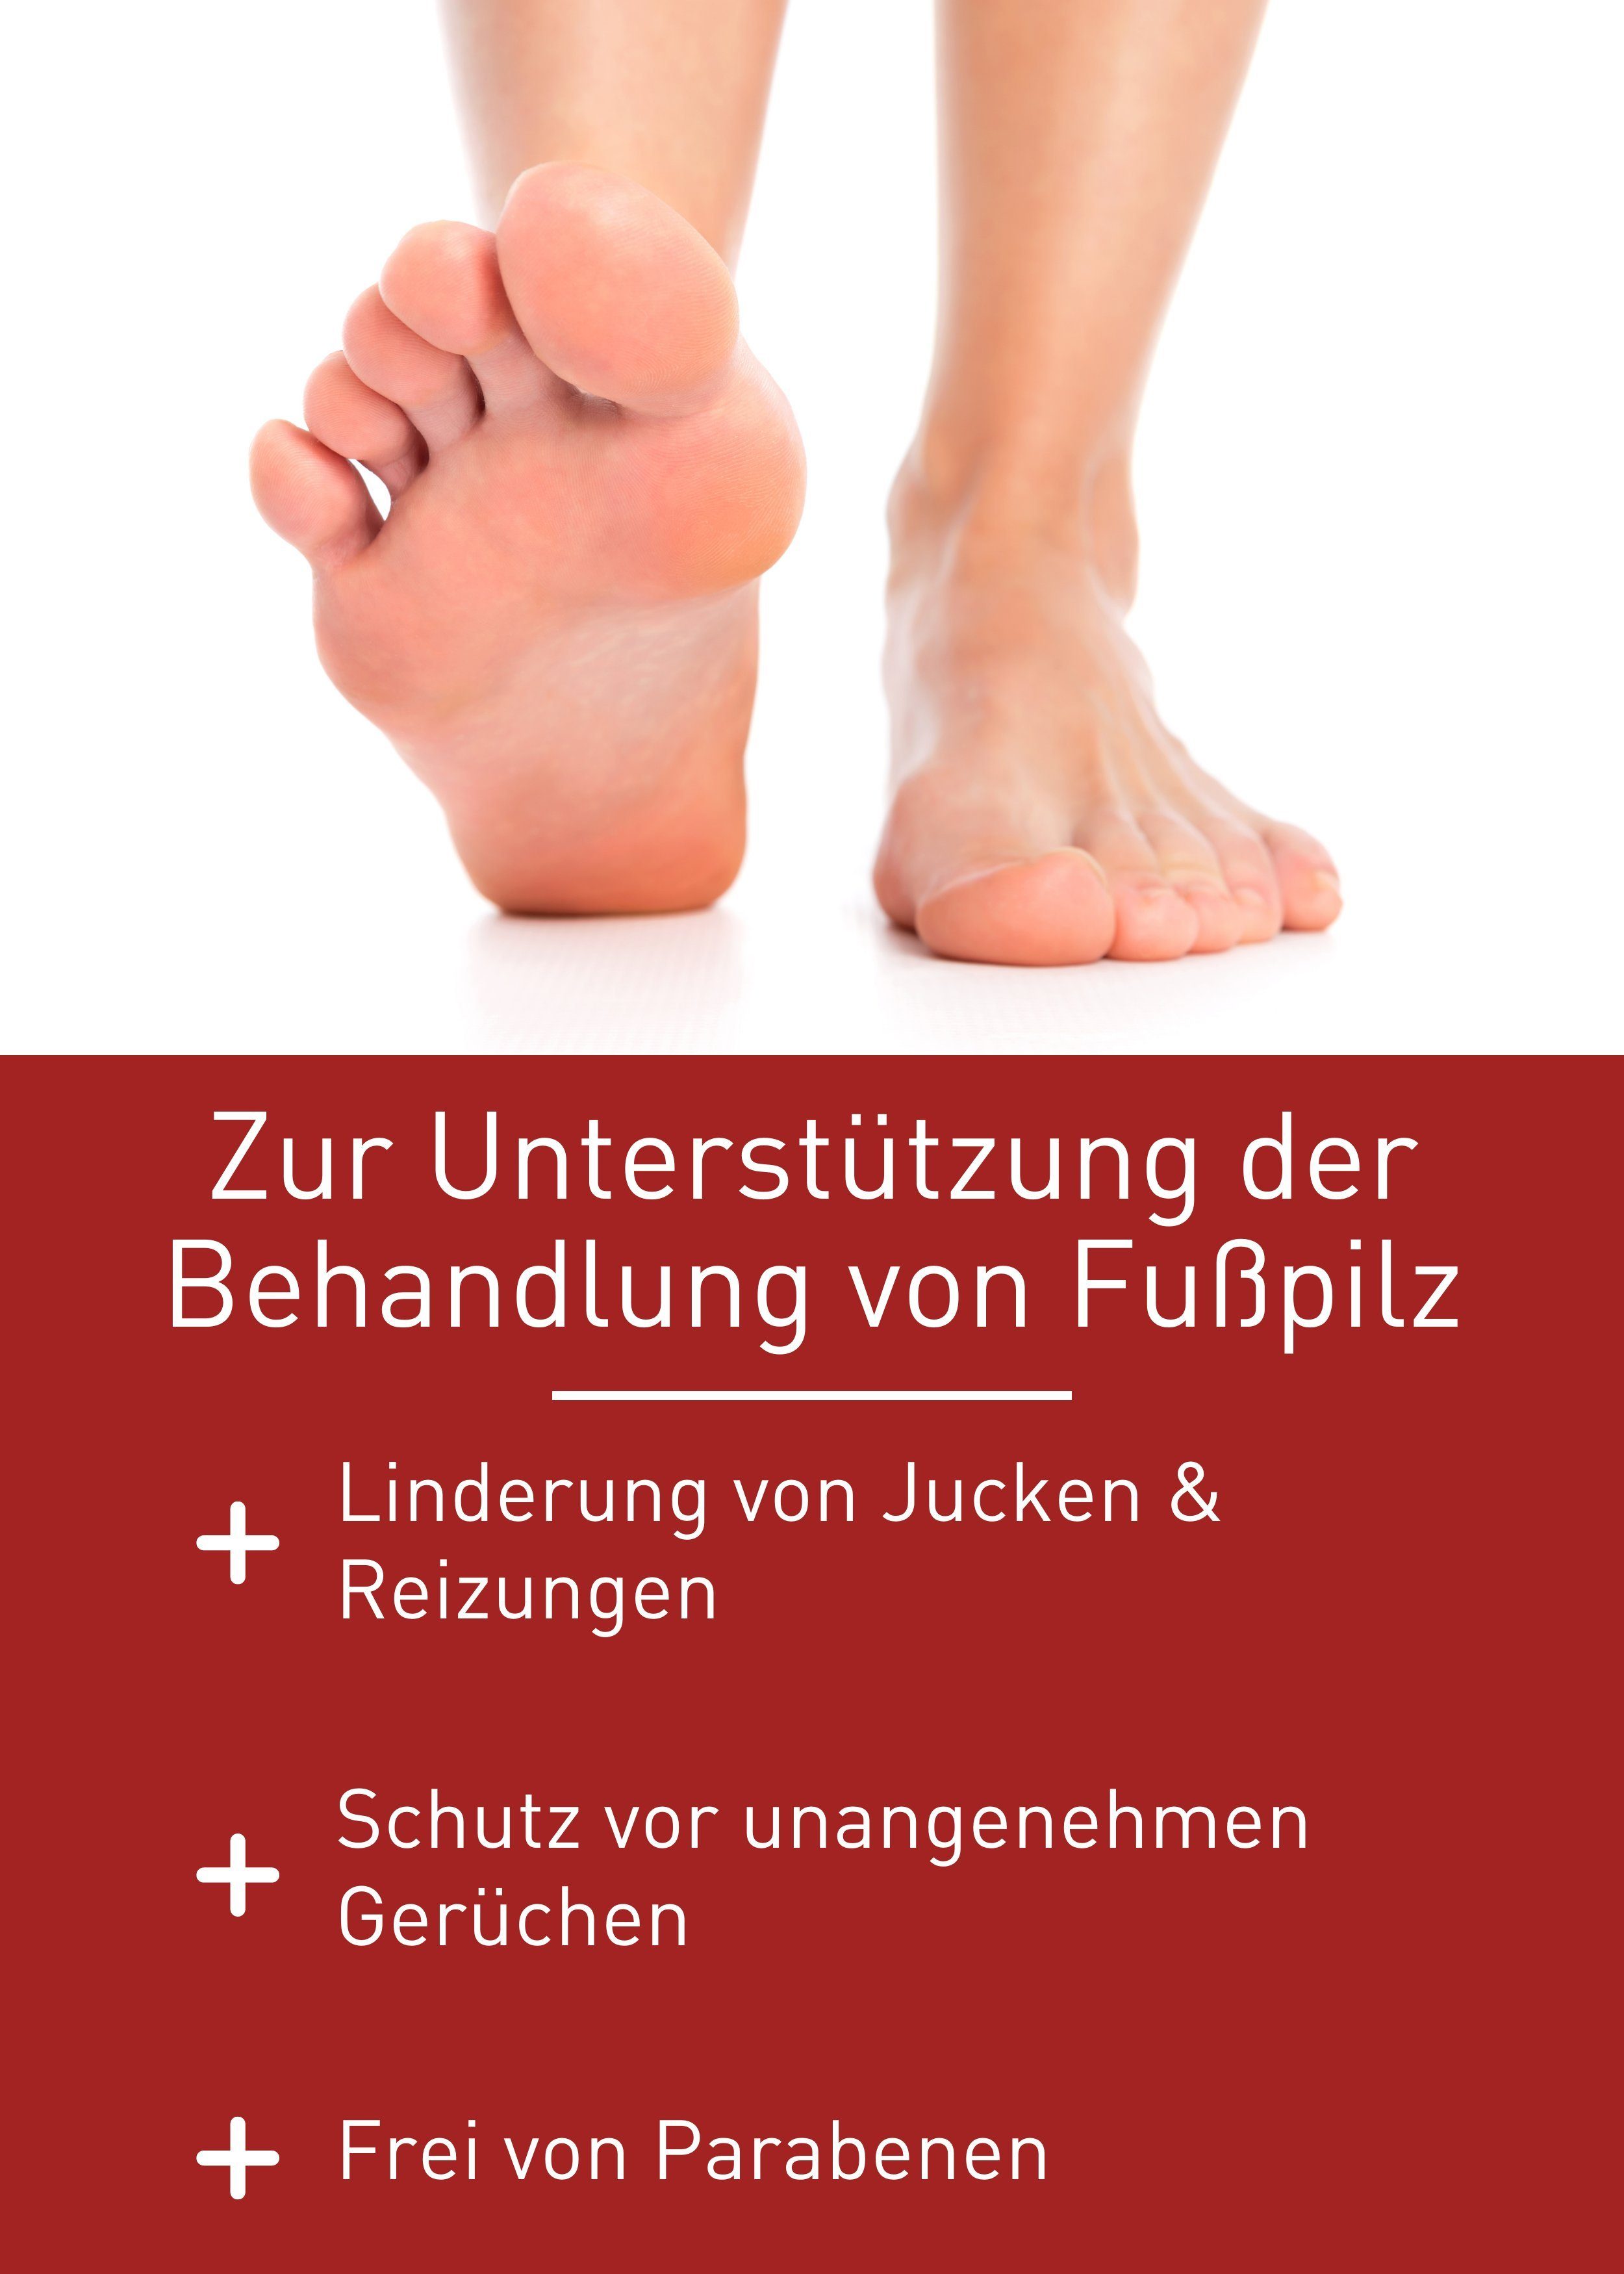 Rezeptur Fußpilz von zur Behandlung Fußpilz, Gel N1 patentierte Medizinprodukt, Fußpflegecreme Healthcare